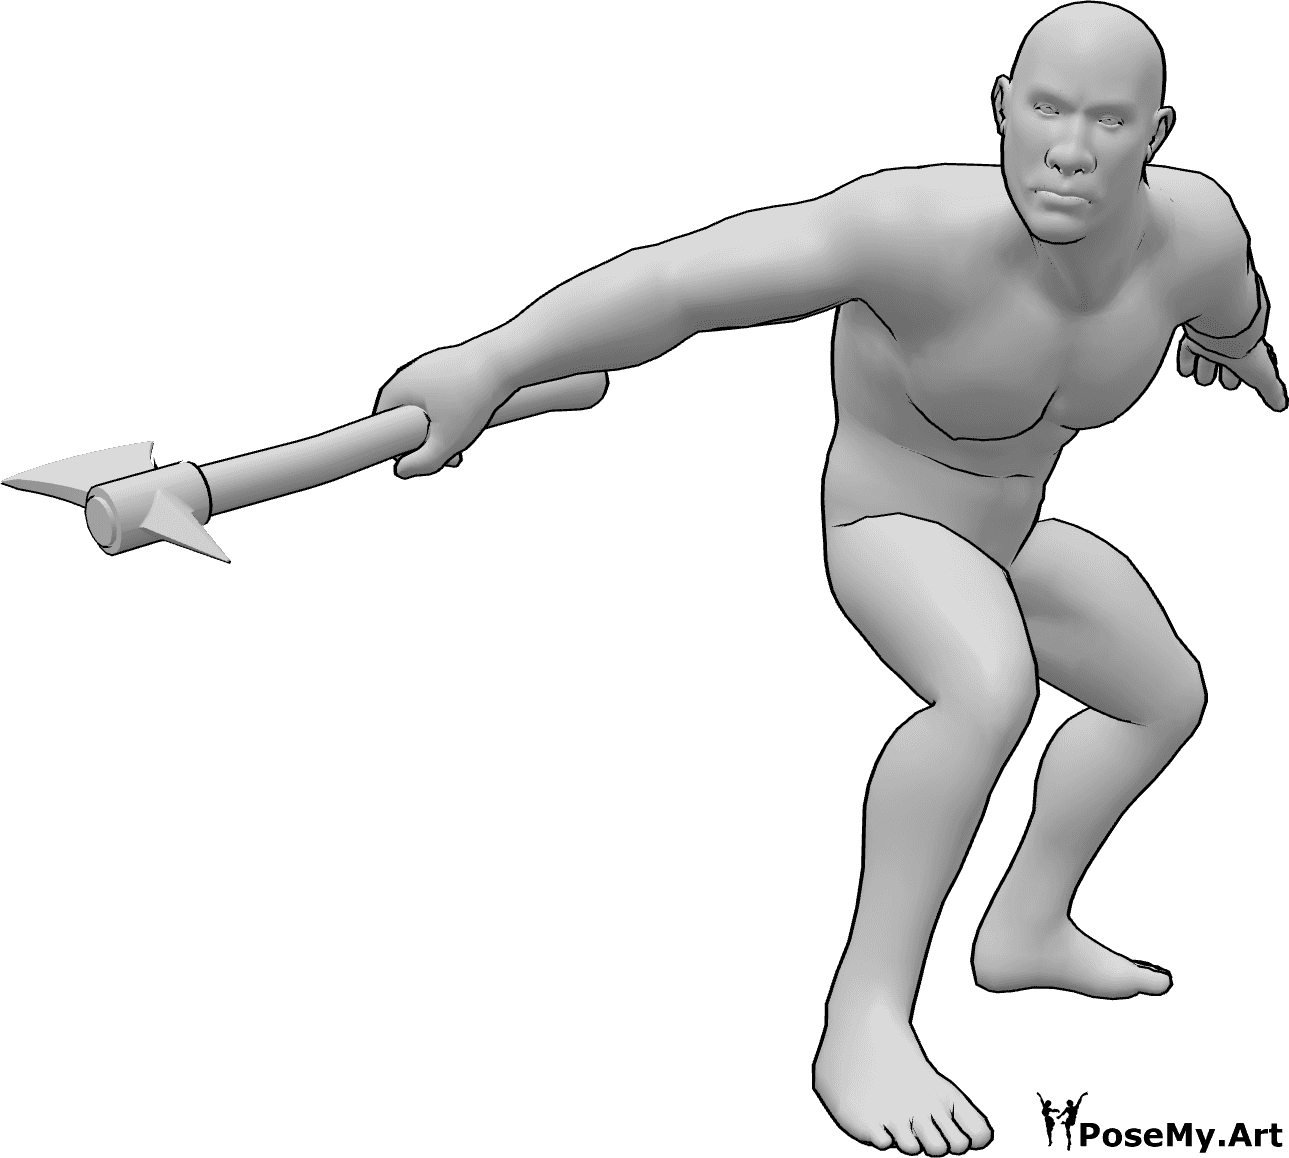 Referencia de poses- Pose de hacha masculina Brute - Hombre bruto listo para atacar con una pose de hacha